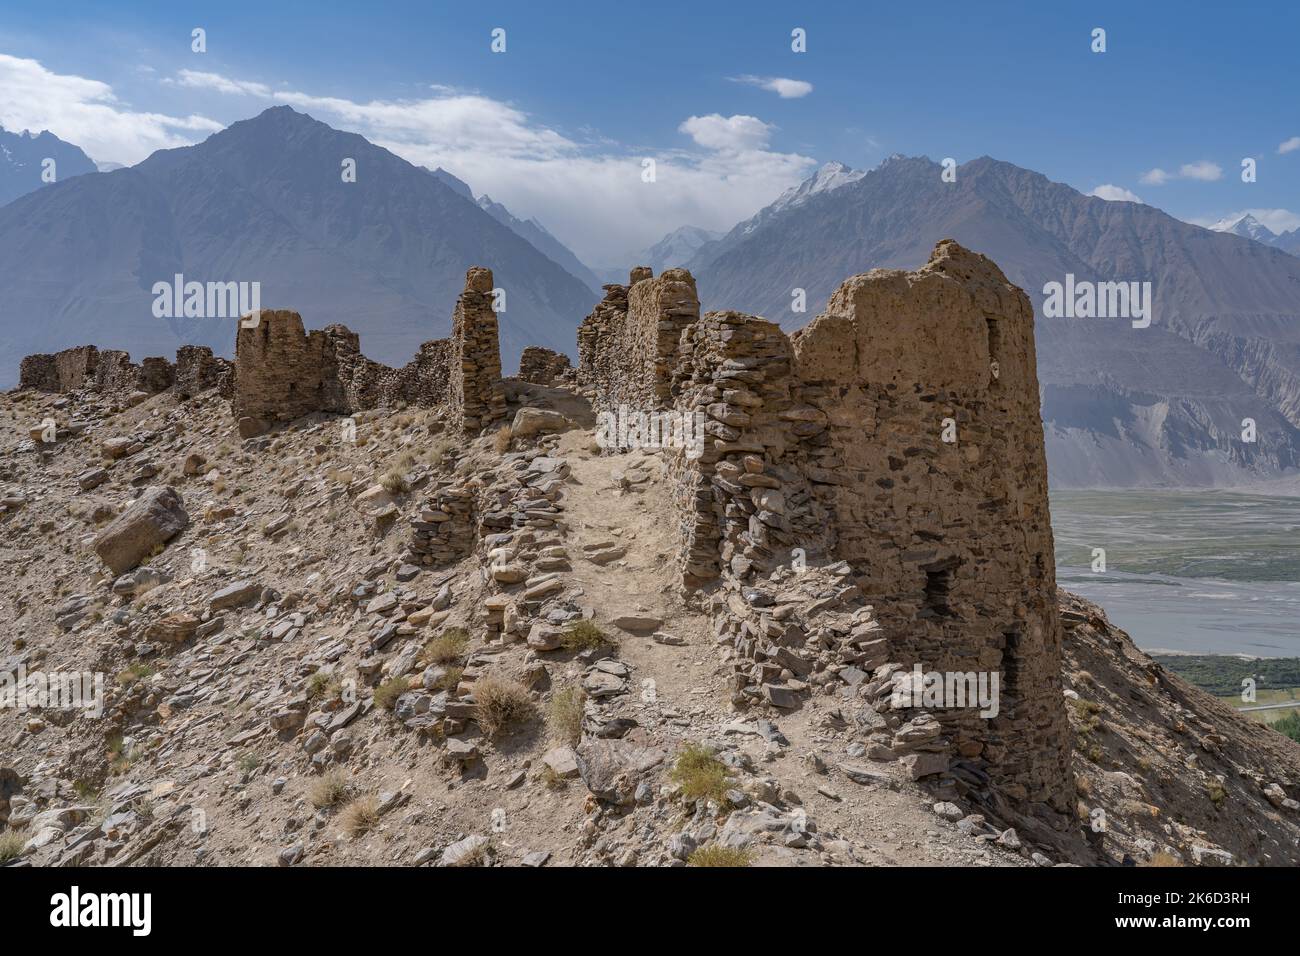 Malerische Ansicht der alten Seidenstraße Yamchun Festung im Wachan Korridor mit Afghanistan Berge im Hintergrund, Gorno-Badakshan, Tadschikistan Stockfoto